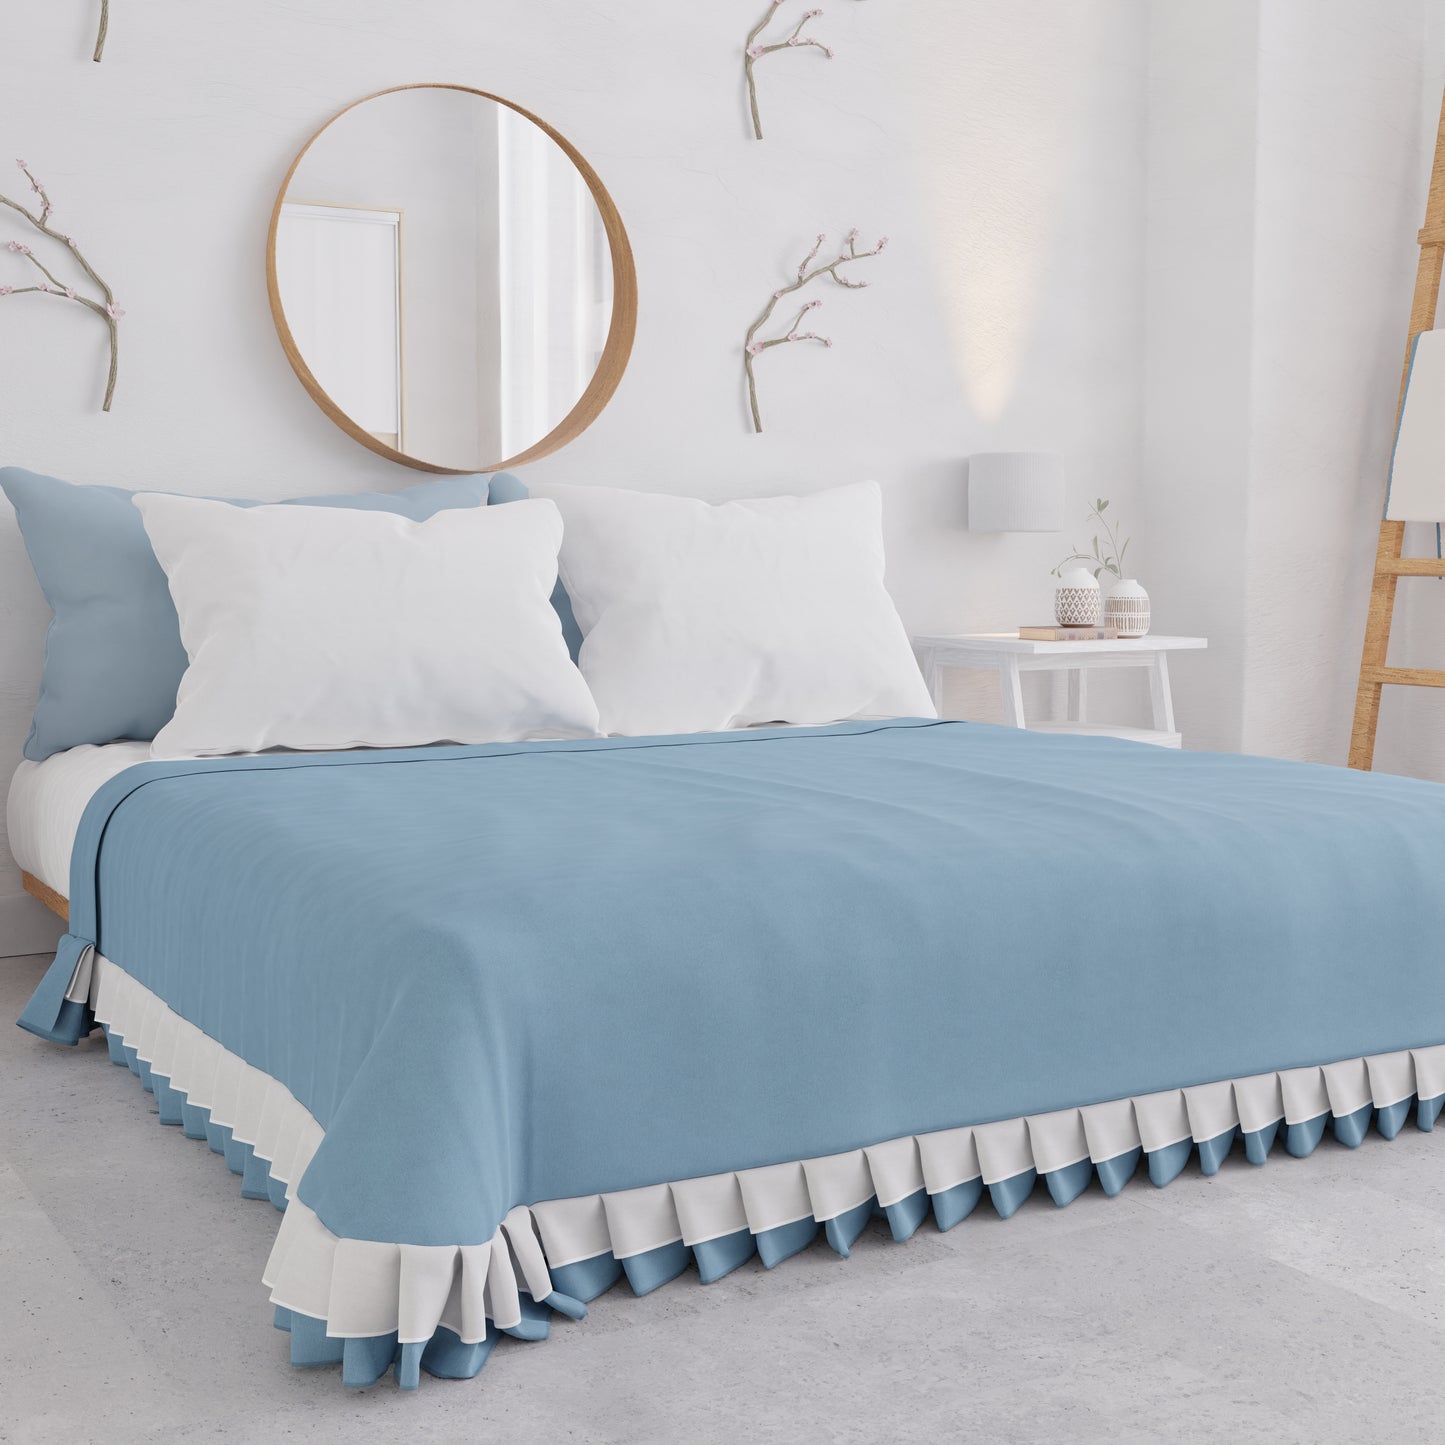 Couvre-lit double été, couvre-lit avec double volant, bleu clair 